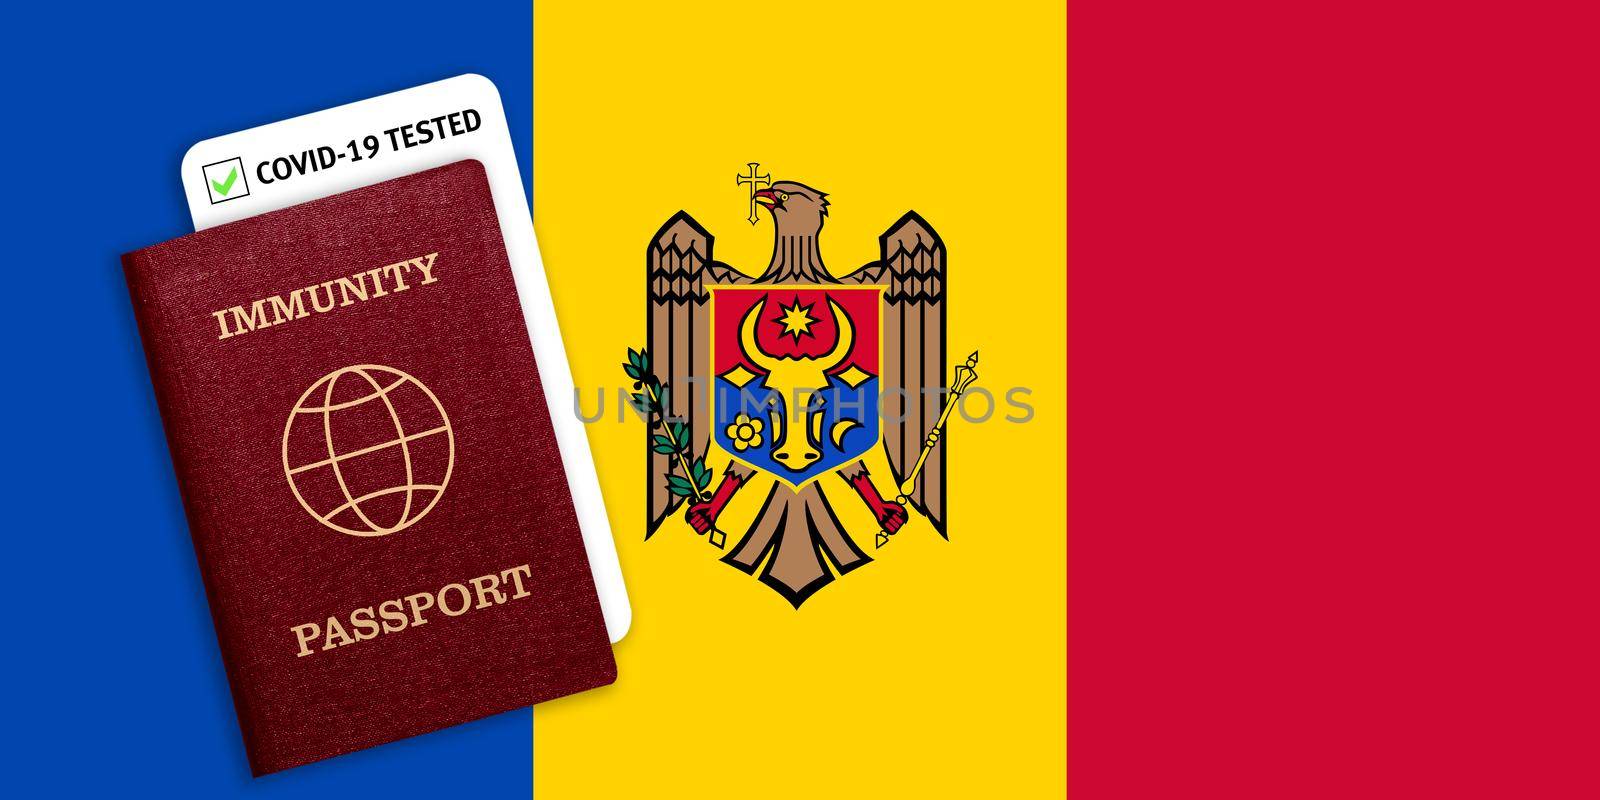 Immunity passport and coronavirus test with flag of Moldova by galinasharapova